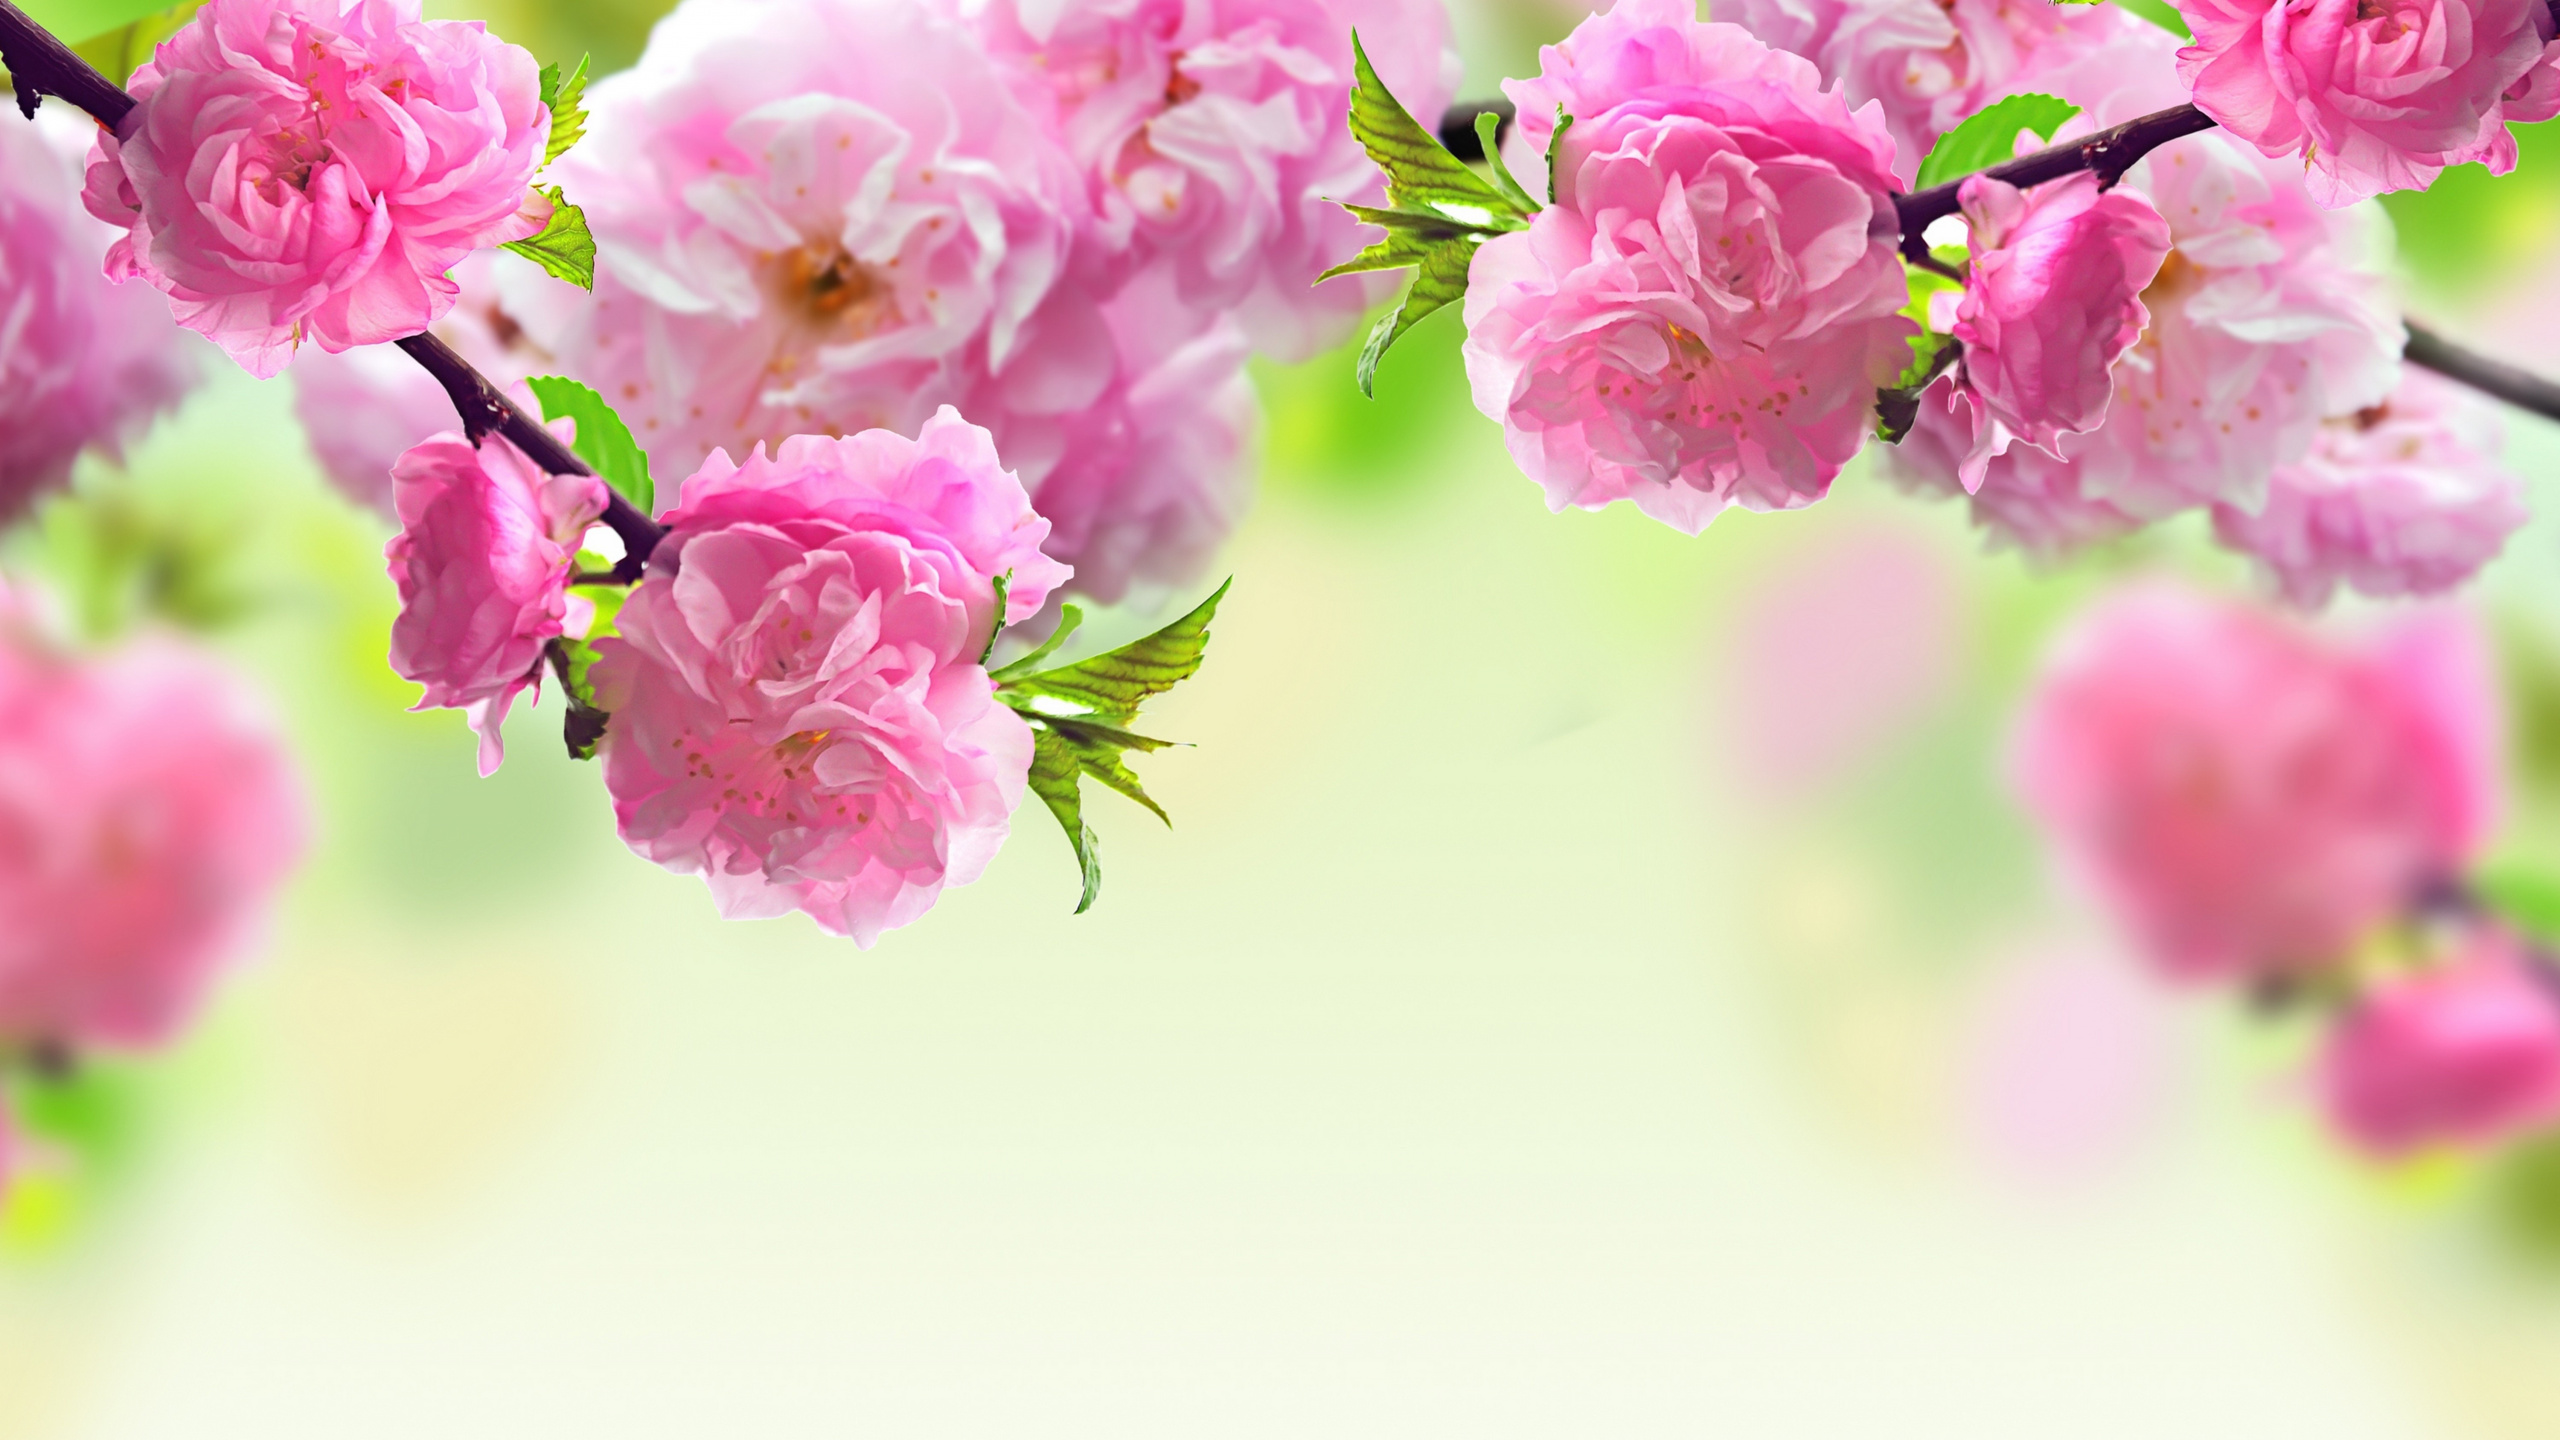 弹簧, 粉红色, 开花, 显花植物, 手持设备 壁纸 2560x1440 允许